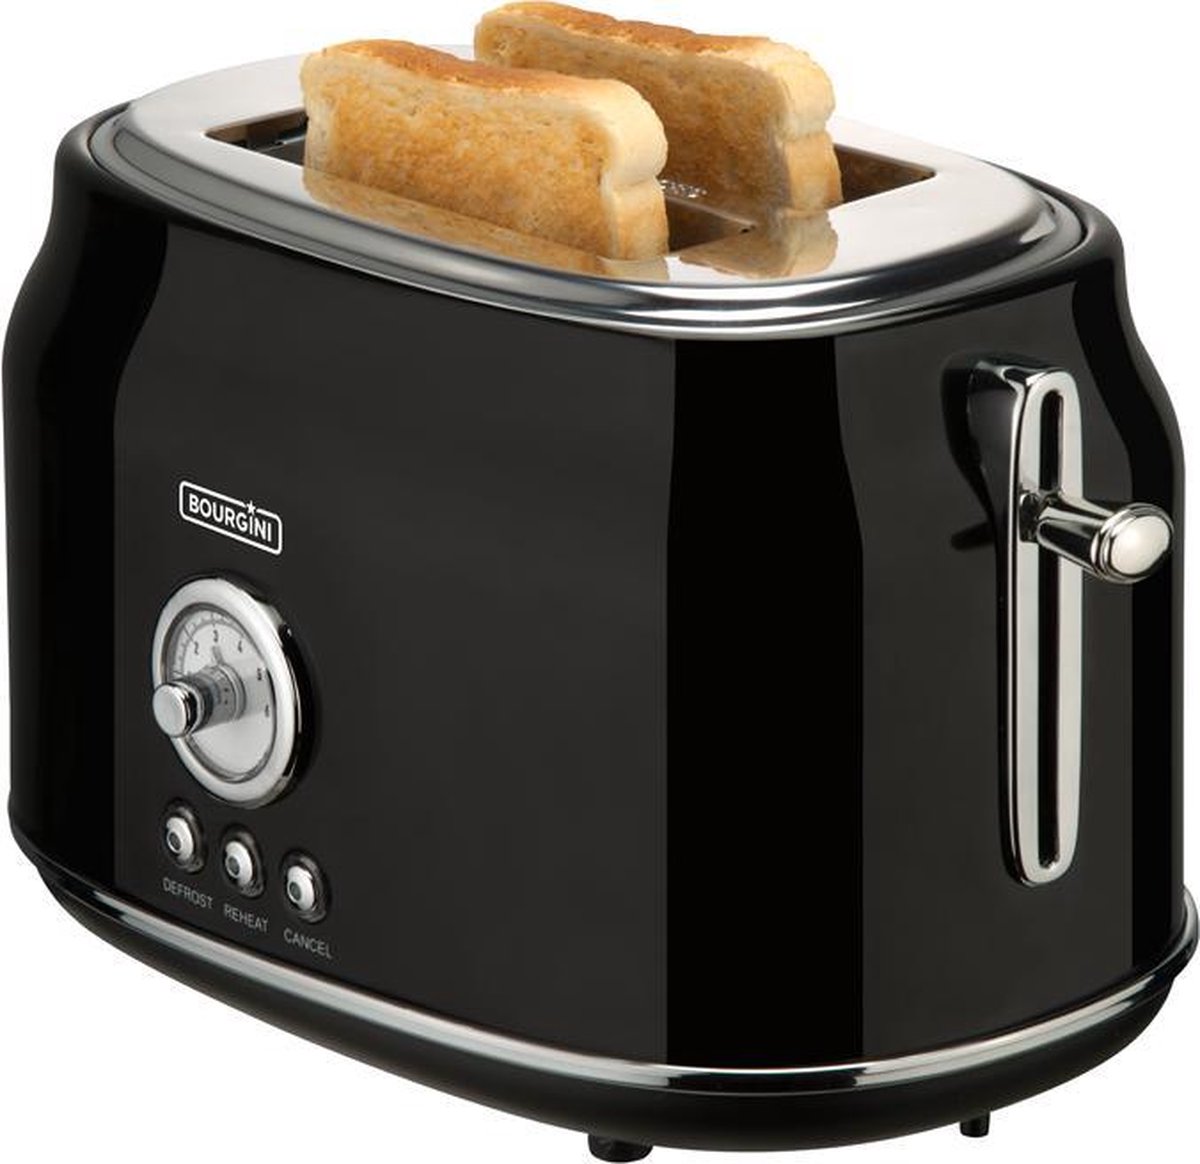 ik ben trots astronaut spoelen Bourgini Retro Toaster - Broodrooster - Zwart | bol.com